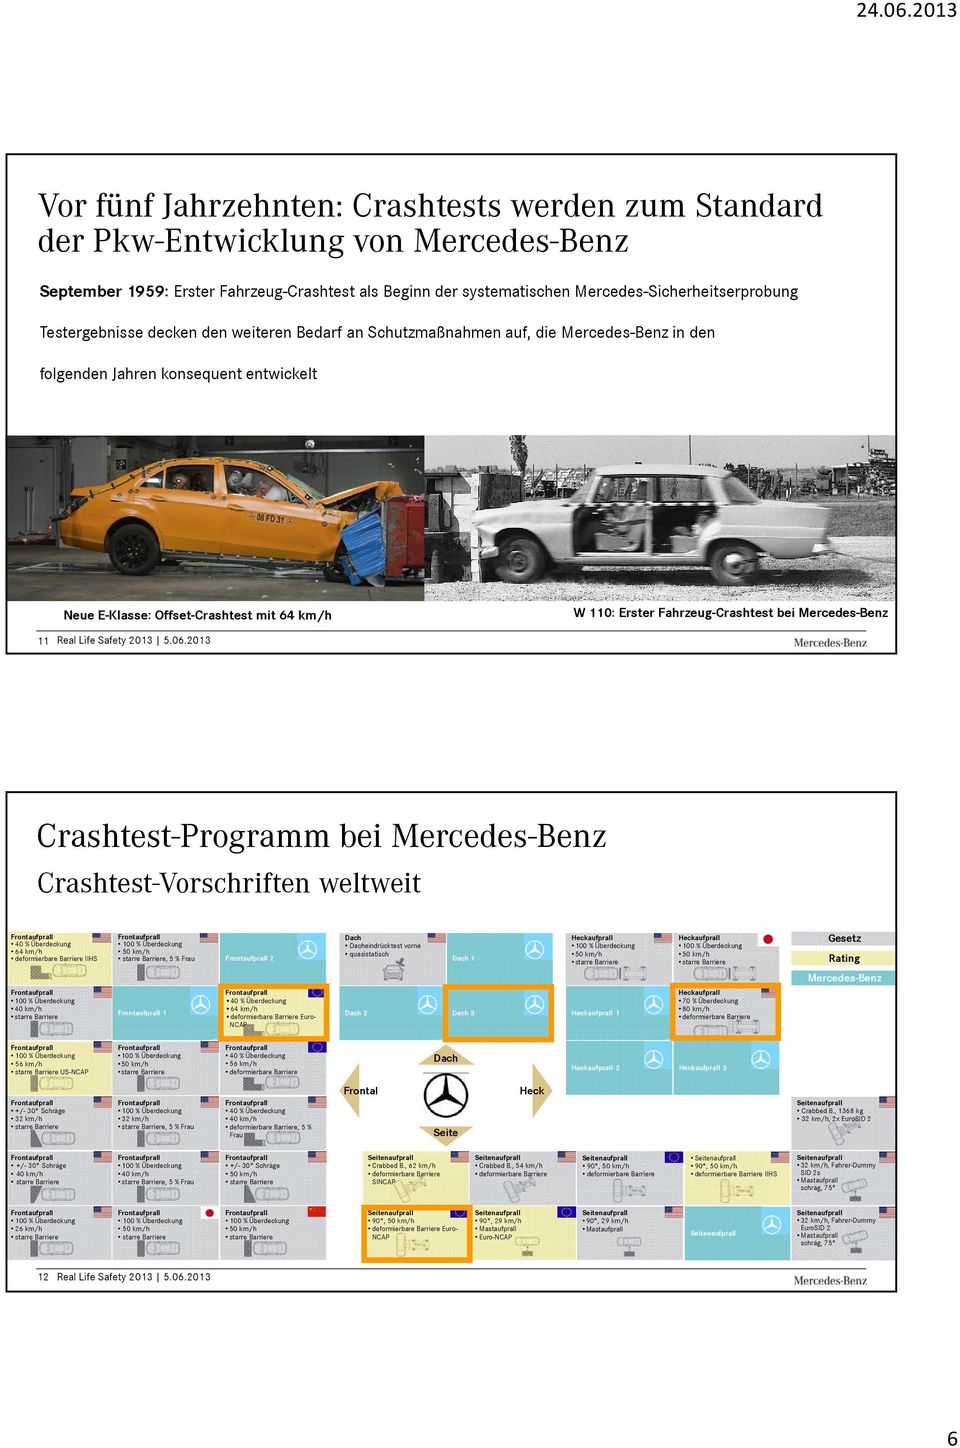 Fahrzeug-Crashtest bei Mercedes-Benz 11 Real Life Safety 2013 5.06.